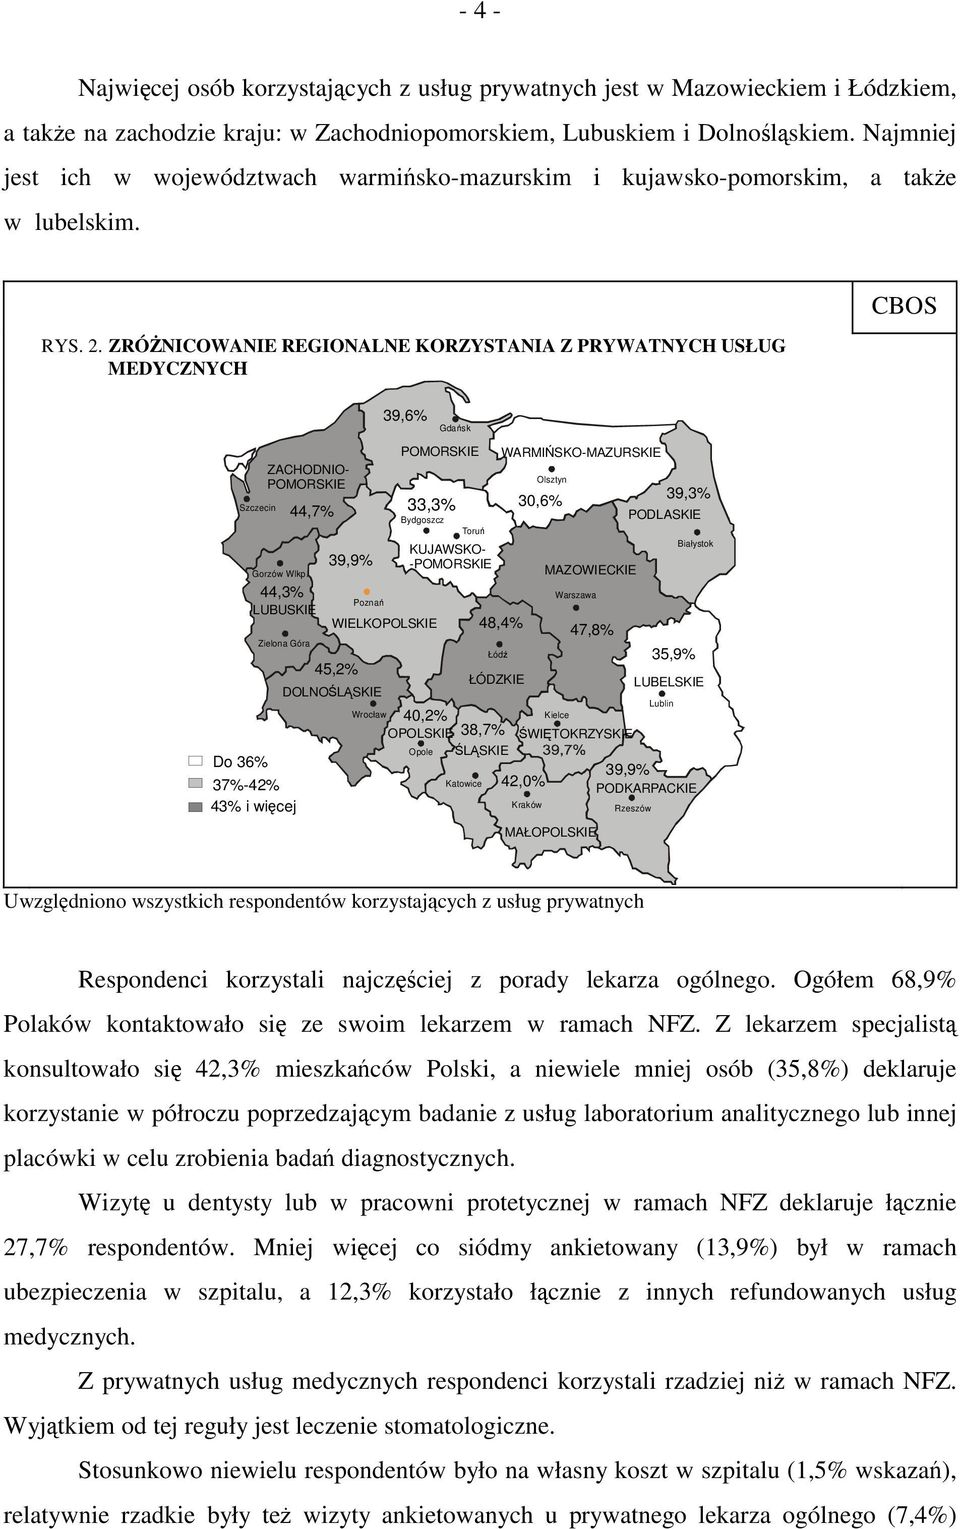 ZRÓŻNICOWANIE REGIONALNE KORZYSTANIA Z PRYWATNYCH USŁUG MEDYCZNYCH CBOS 39,6% Gdańsk POMORSKIE WARMIŃSKO-MAZURSKIE ZACHODNIO- Olsztyn POMORSKIE 30,6% 39,3% Szczecin 44,7% 33,3% Bydgoszcz PODLASKIE